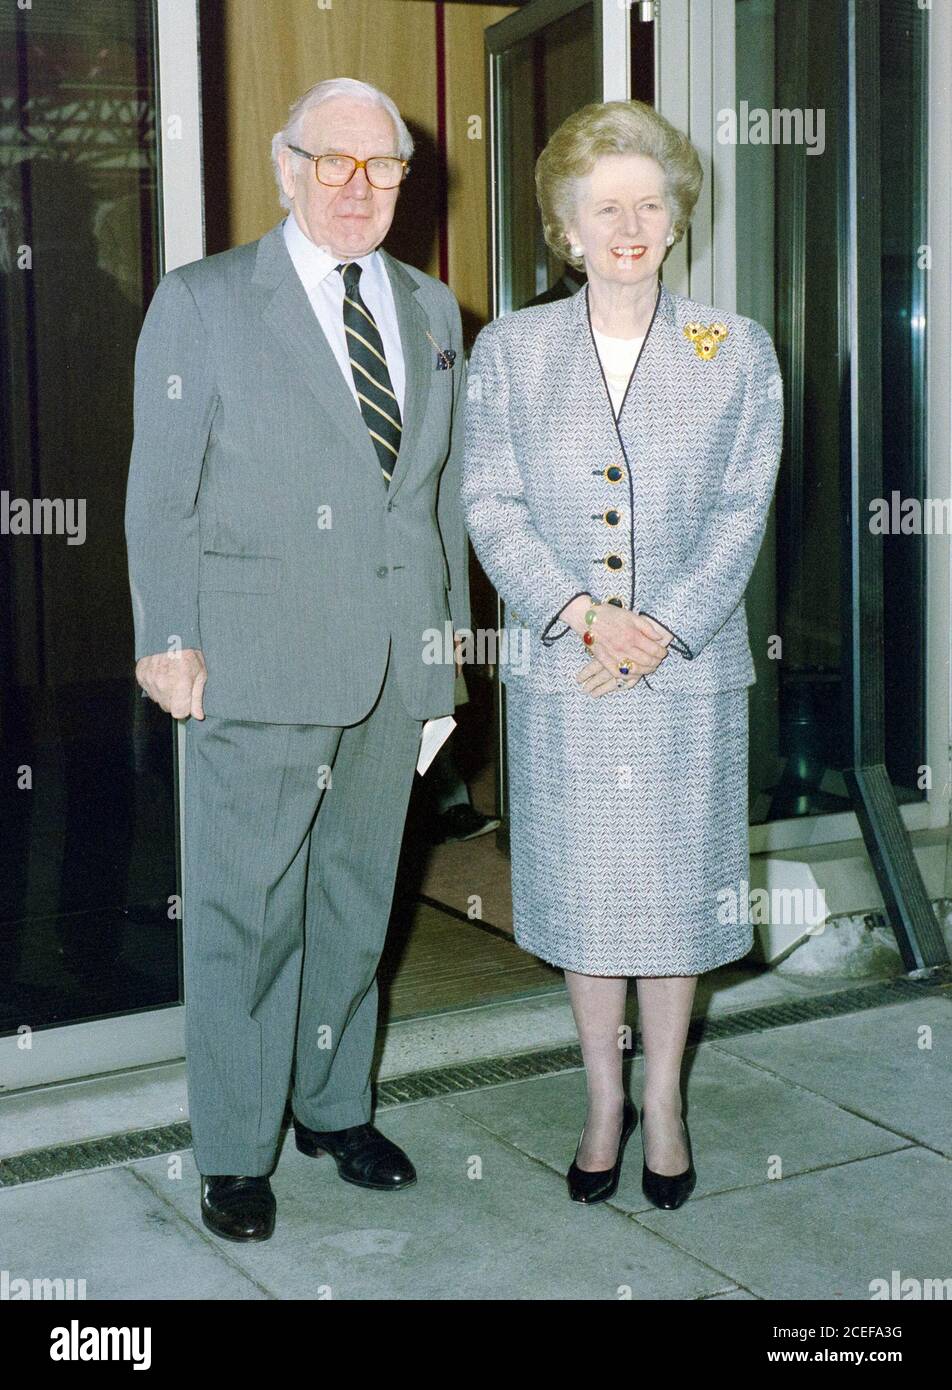 Premier ministre Margaret Thatcher arrivant à l'aéroport de Londres Heathrow 1989 Banque D'Images